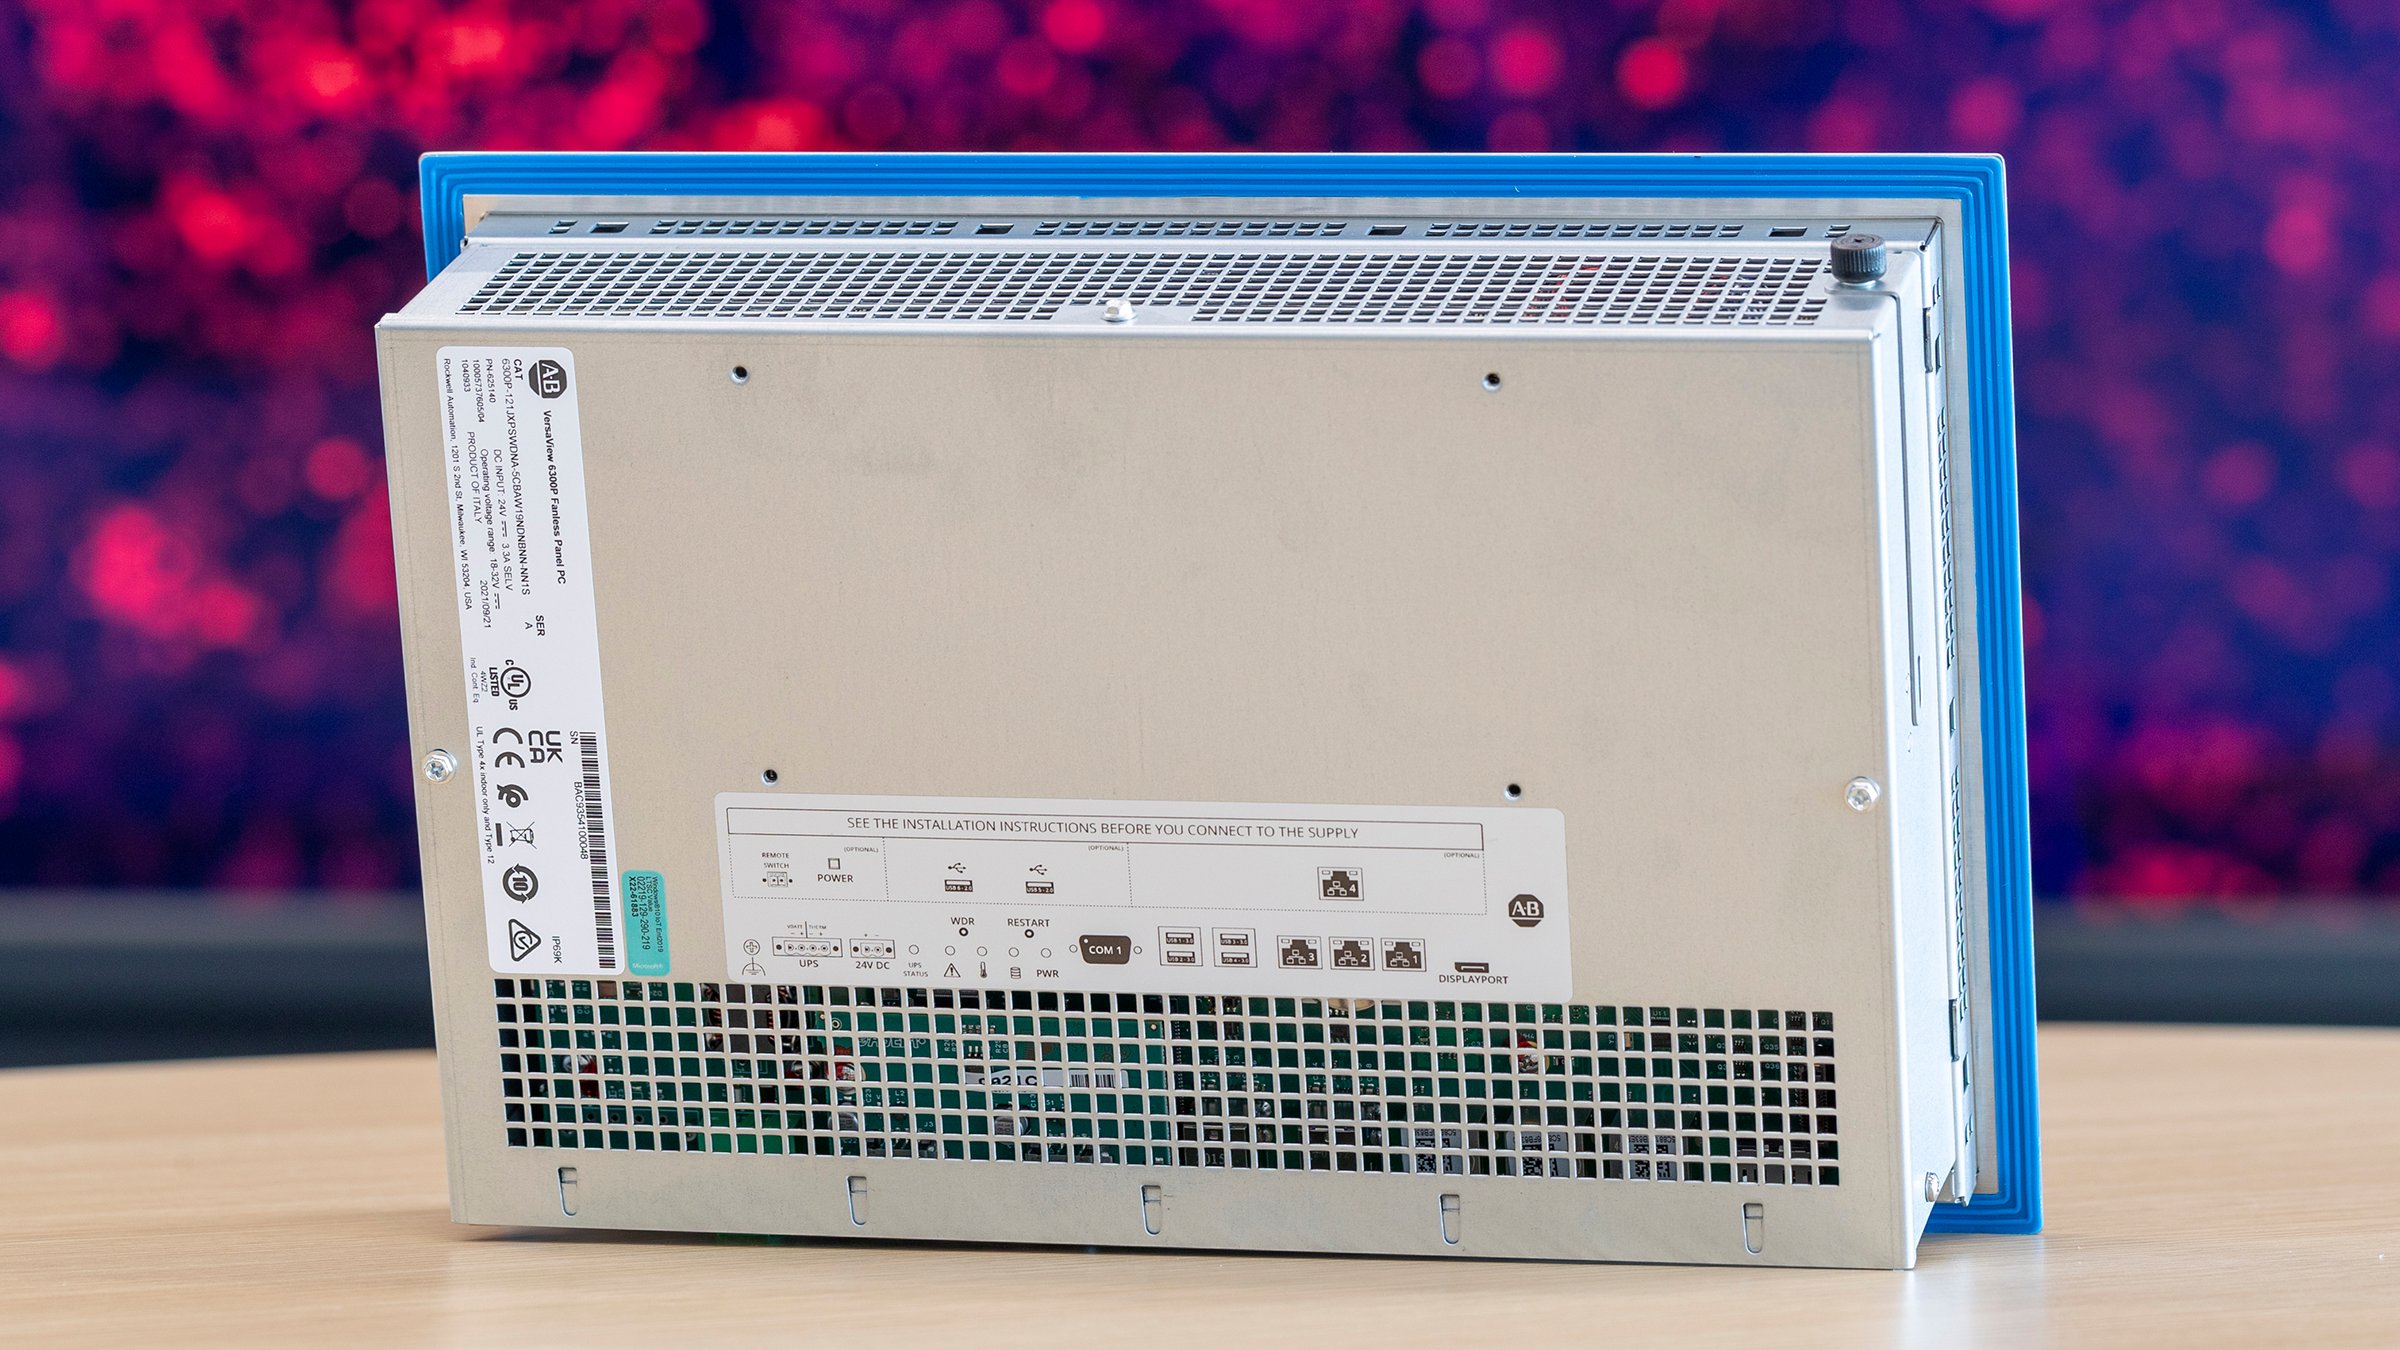 Rückansicht des ASEM-6300P-Panel-PCs aus Edelstahl. Hintergrund ist rot und schwarz